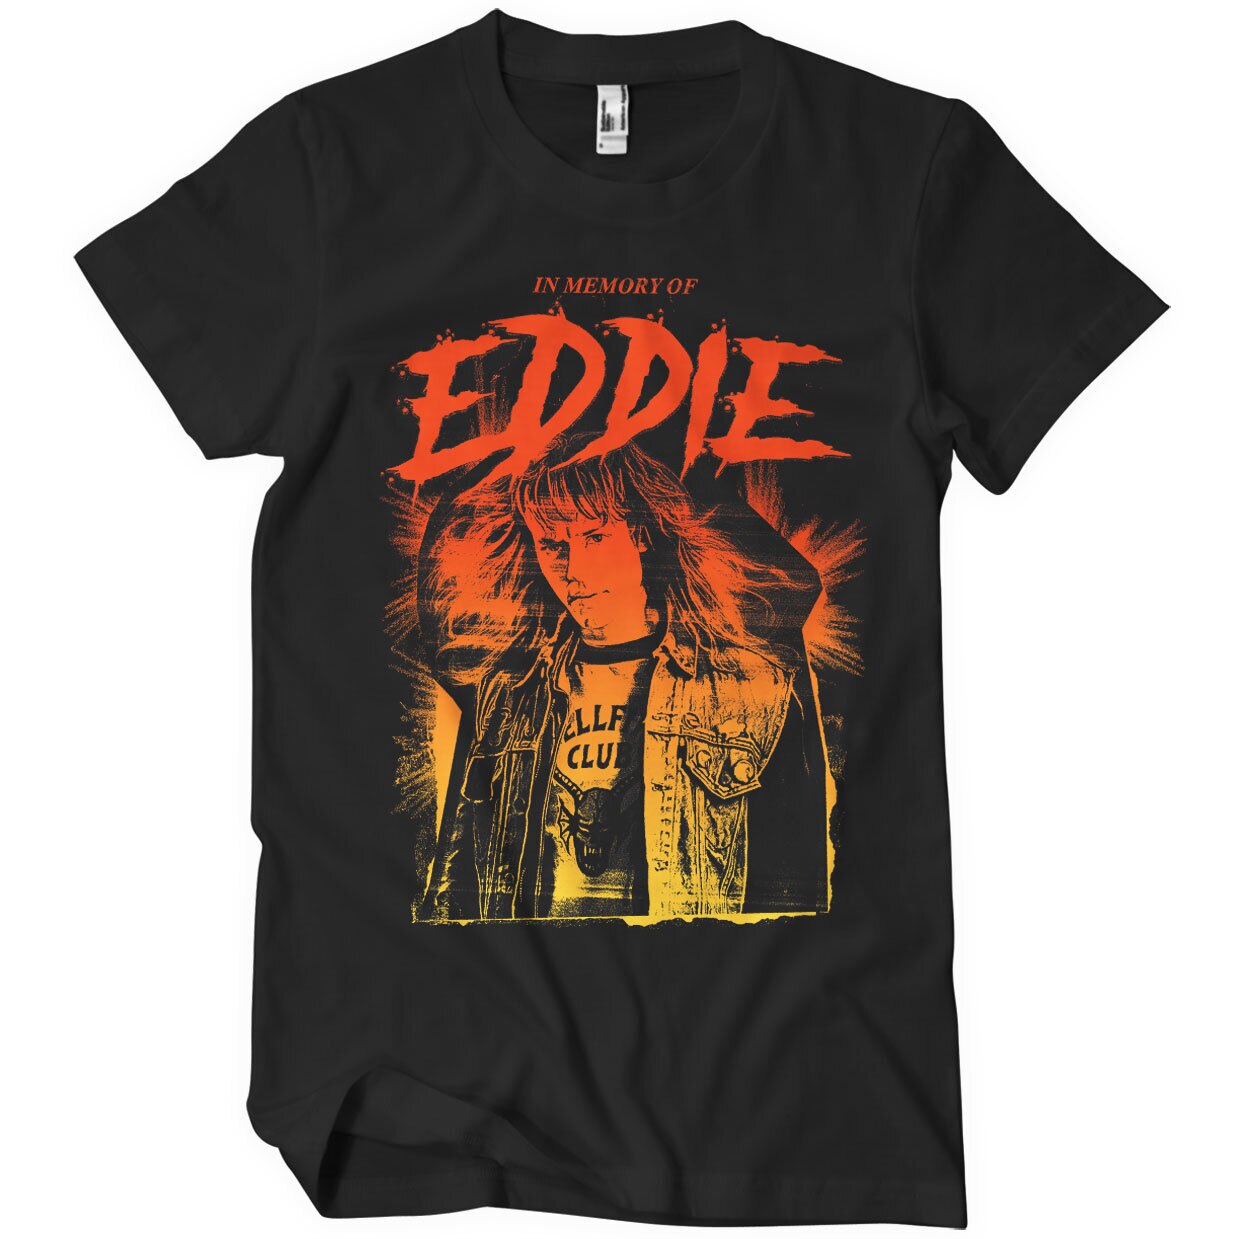 In Memory Of Eddie T-Shirt